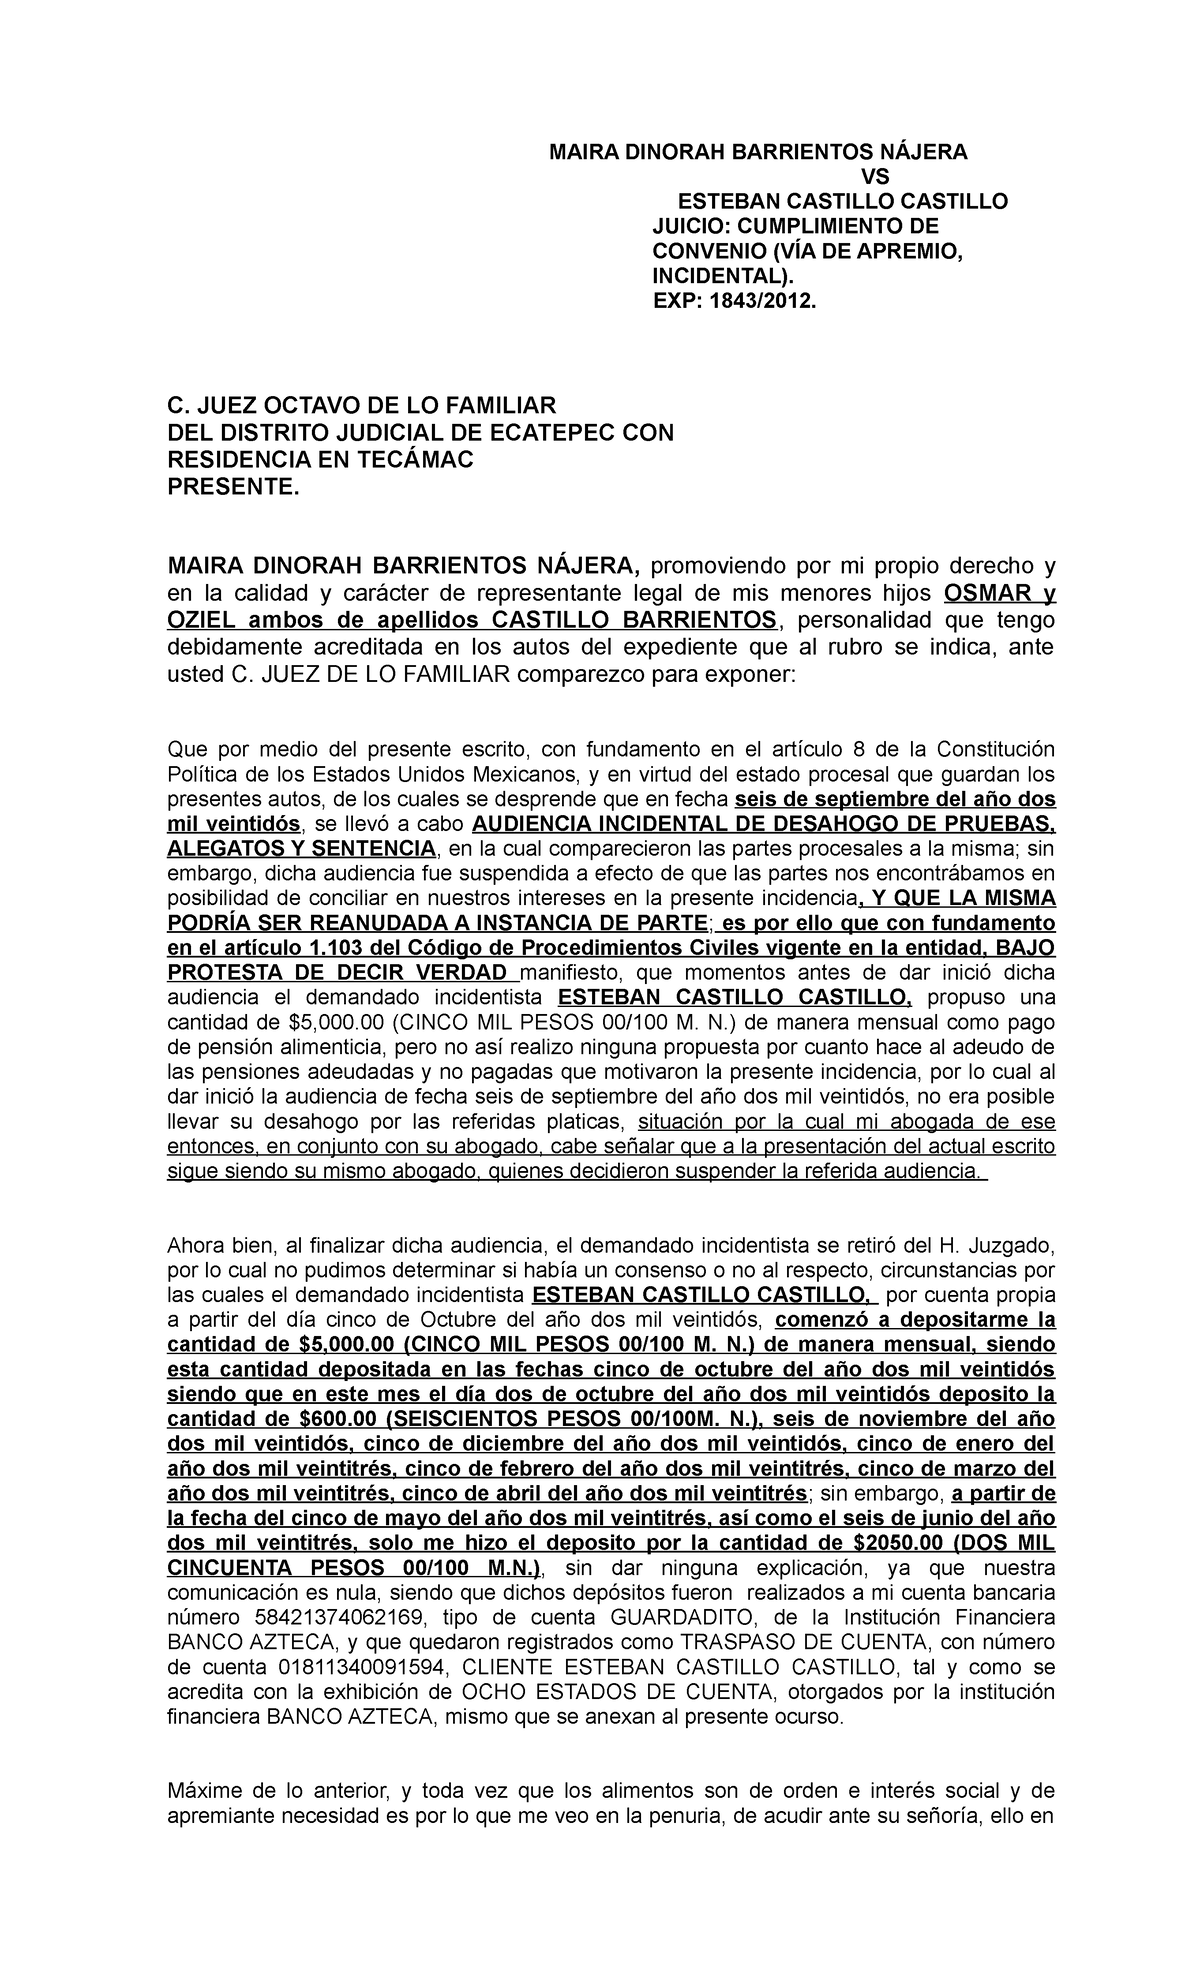 Solicita Reanude Proceso Pensiones - MAIRA DINORAH BARRIENTOS NÁJERA VS ...